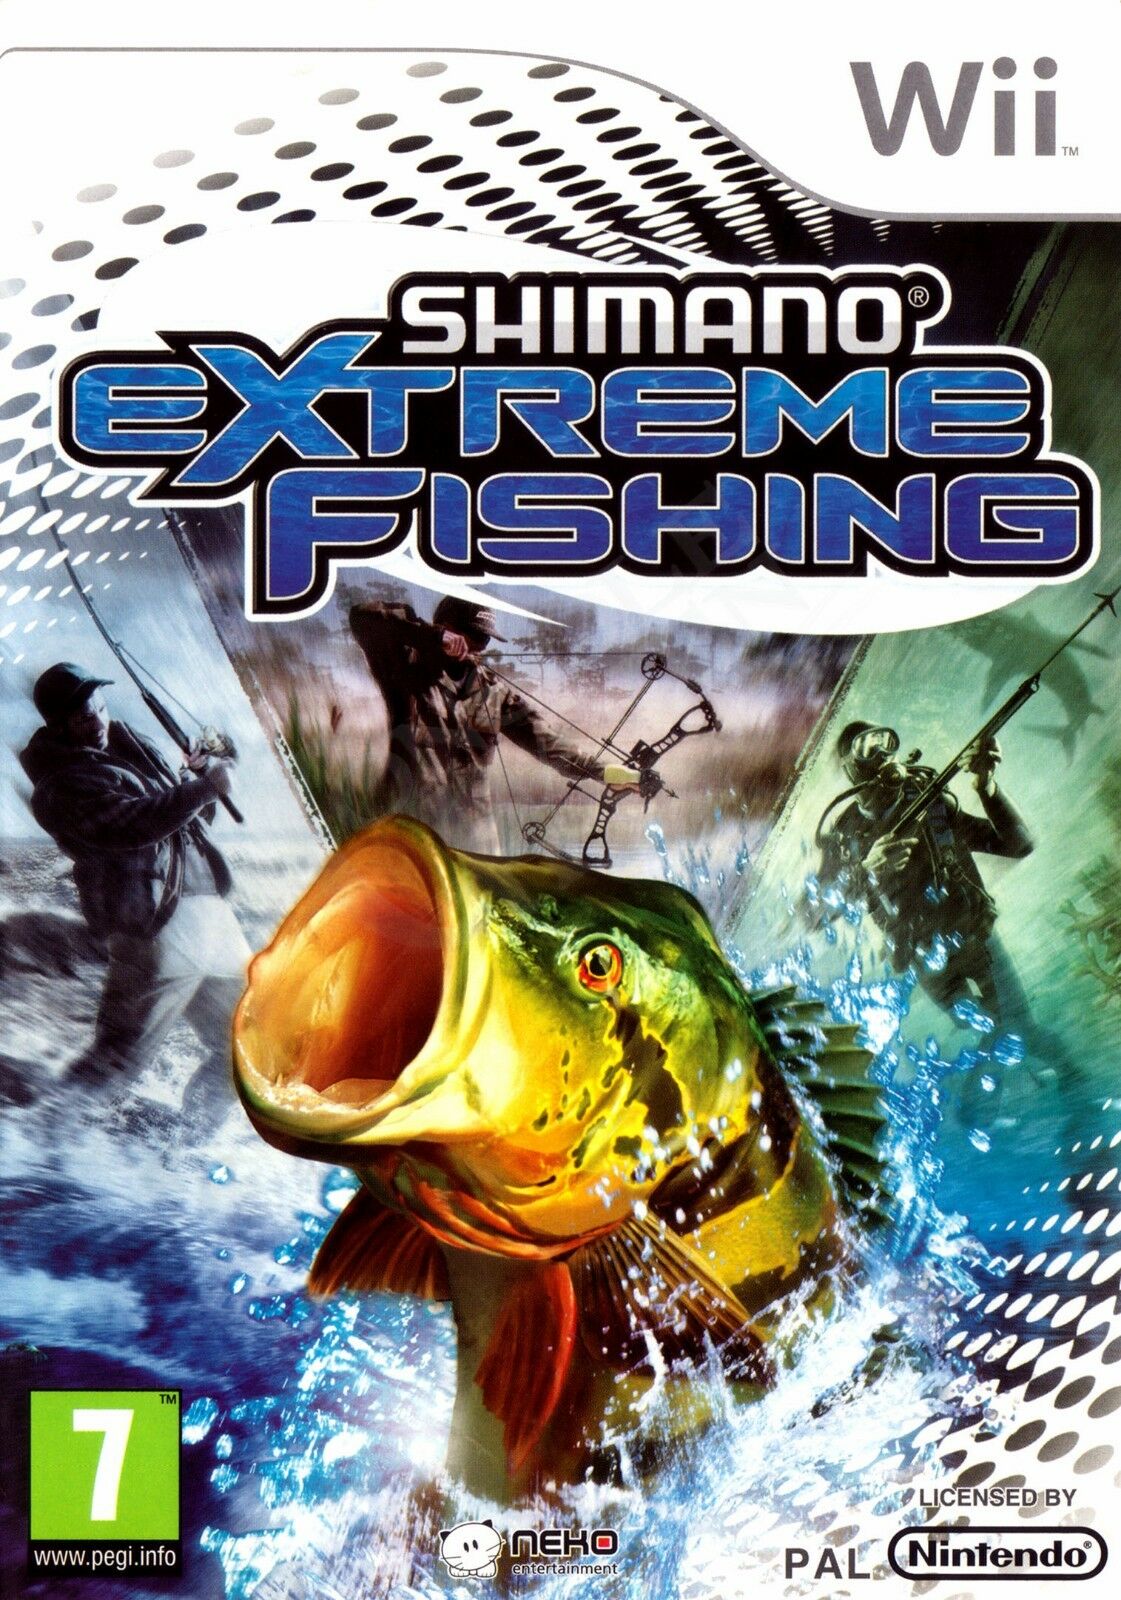 Shimano Xtreme Fishing Images - LaunchBox Games Database